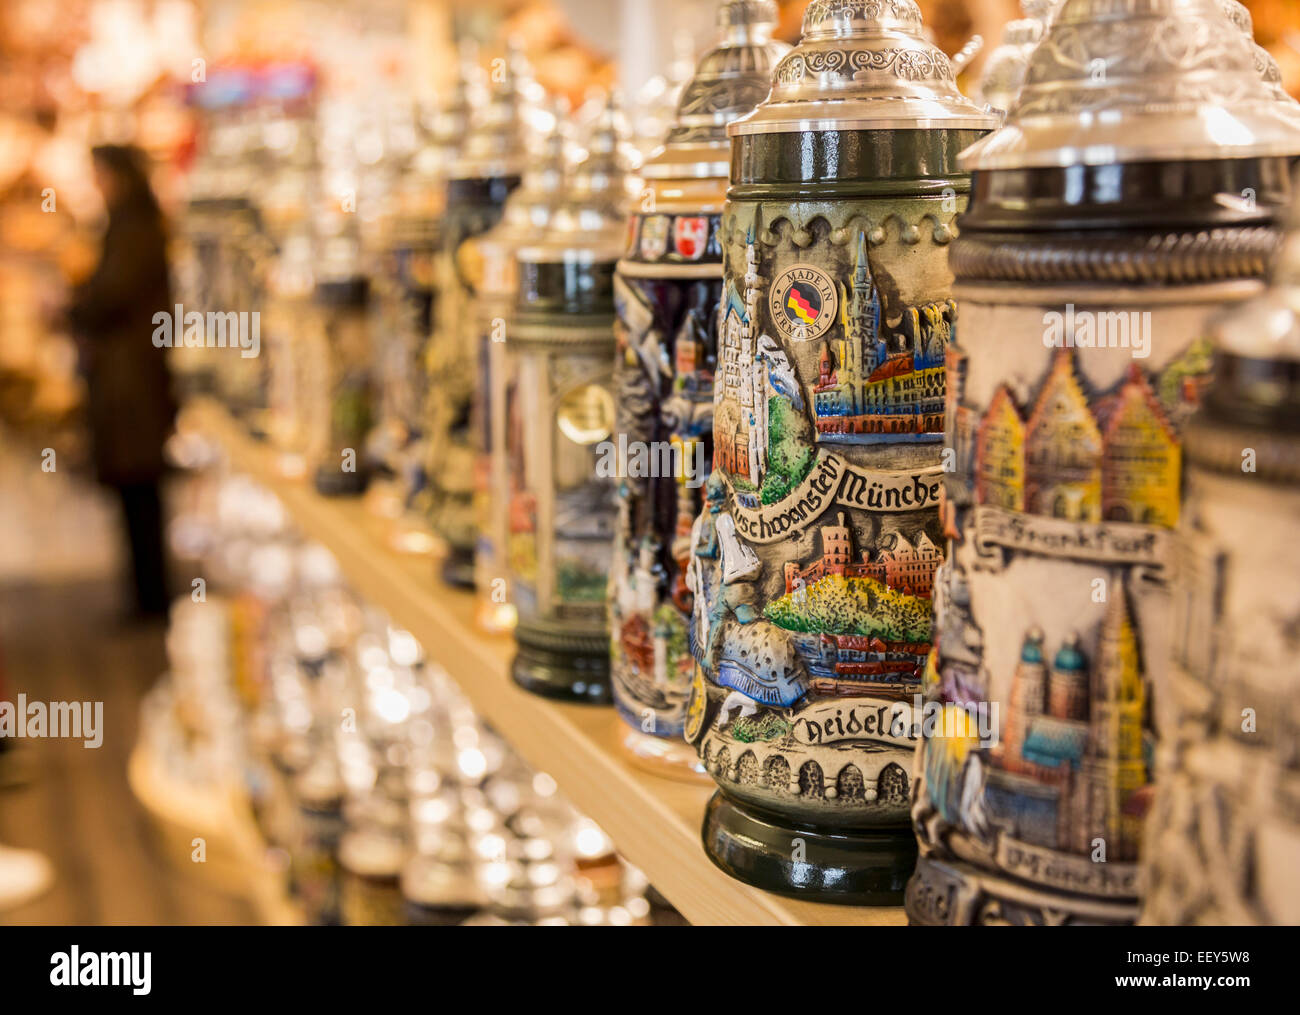 Fila de cerveza alemana Stein o tankards sobre un estante en una tienda en  Ratisbona, Baviera, Alemania Fotografía de stock - Alamy